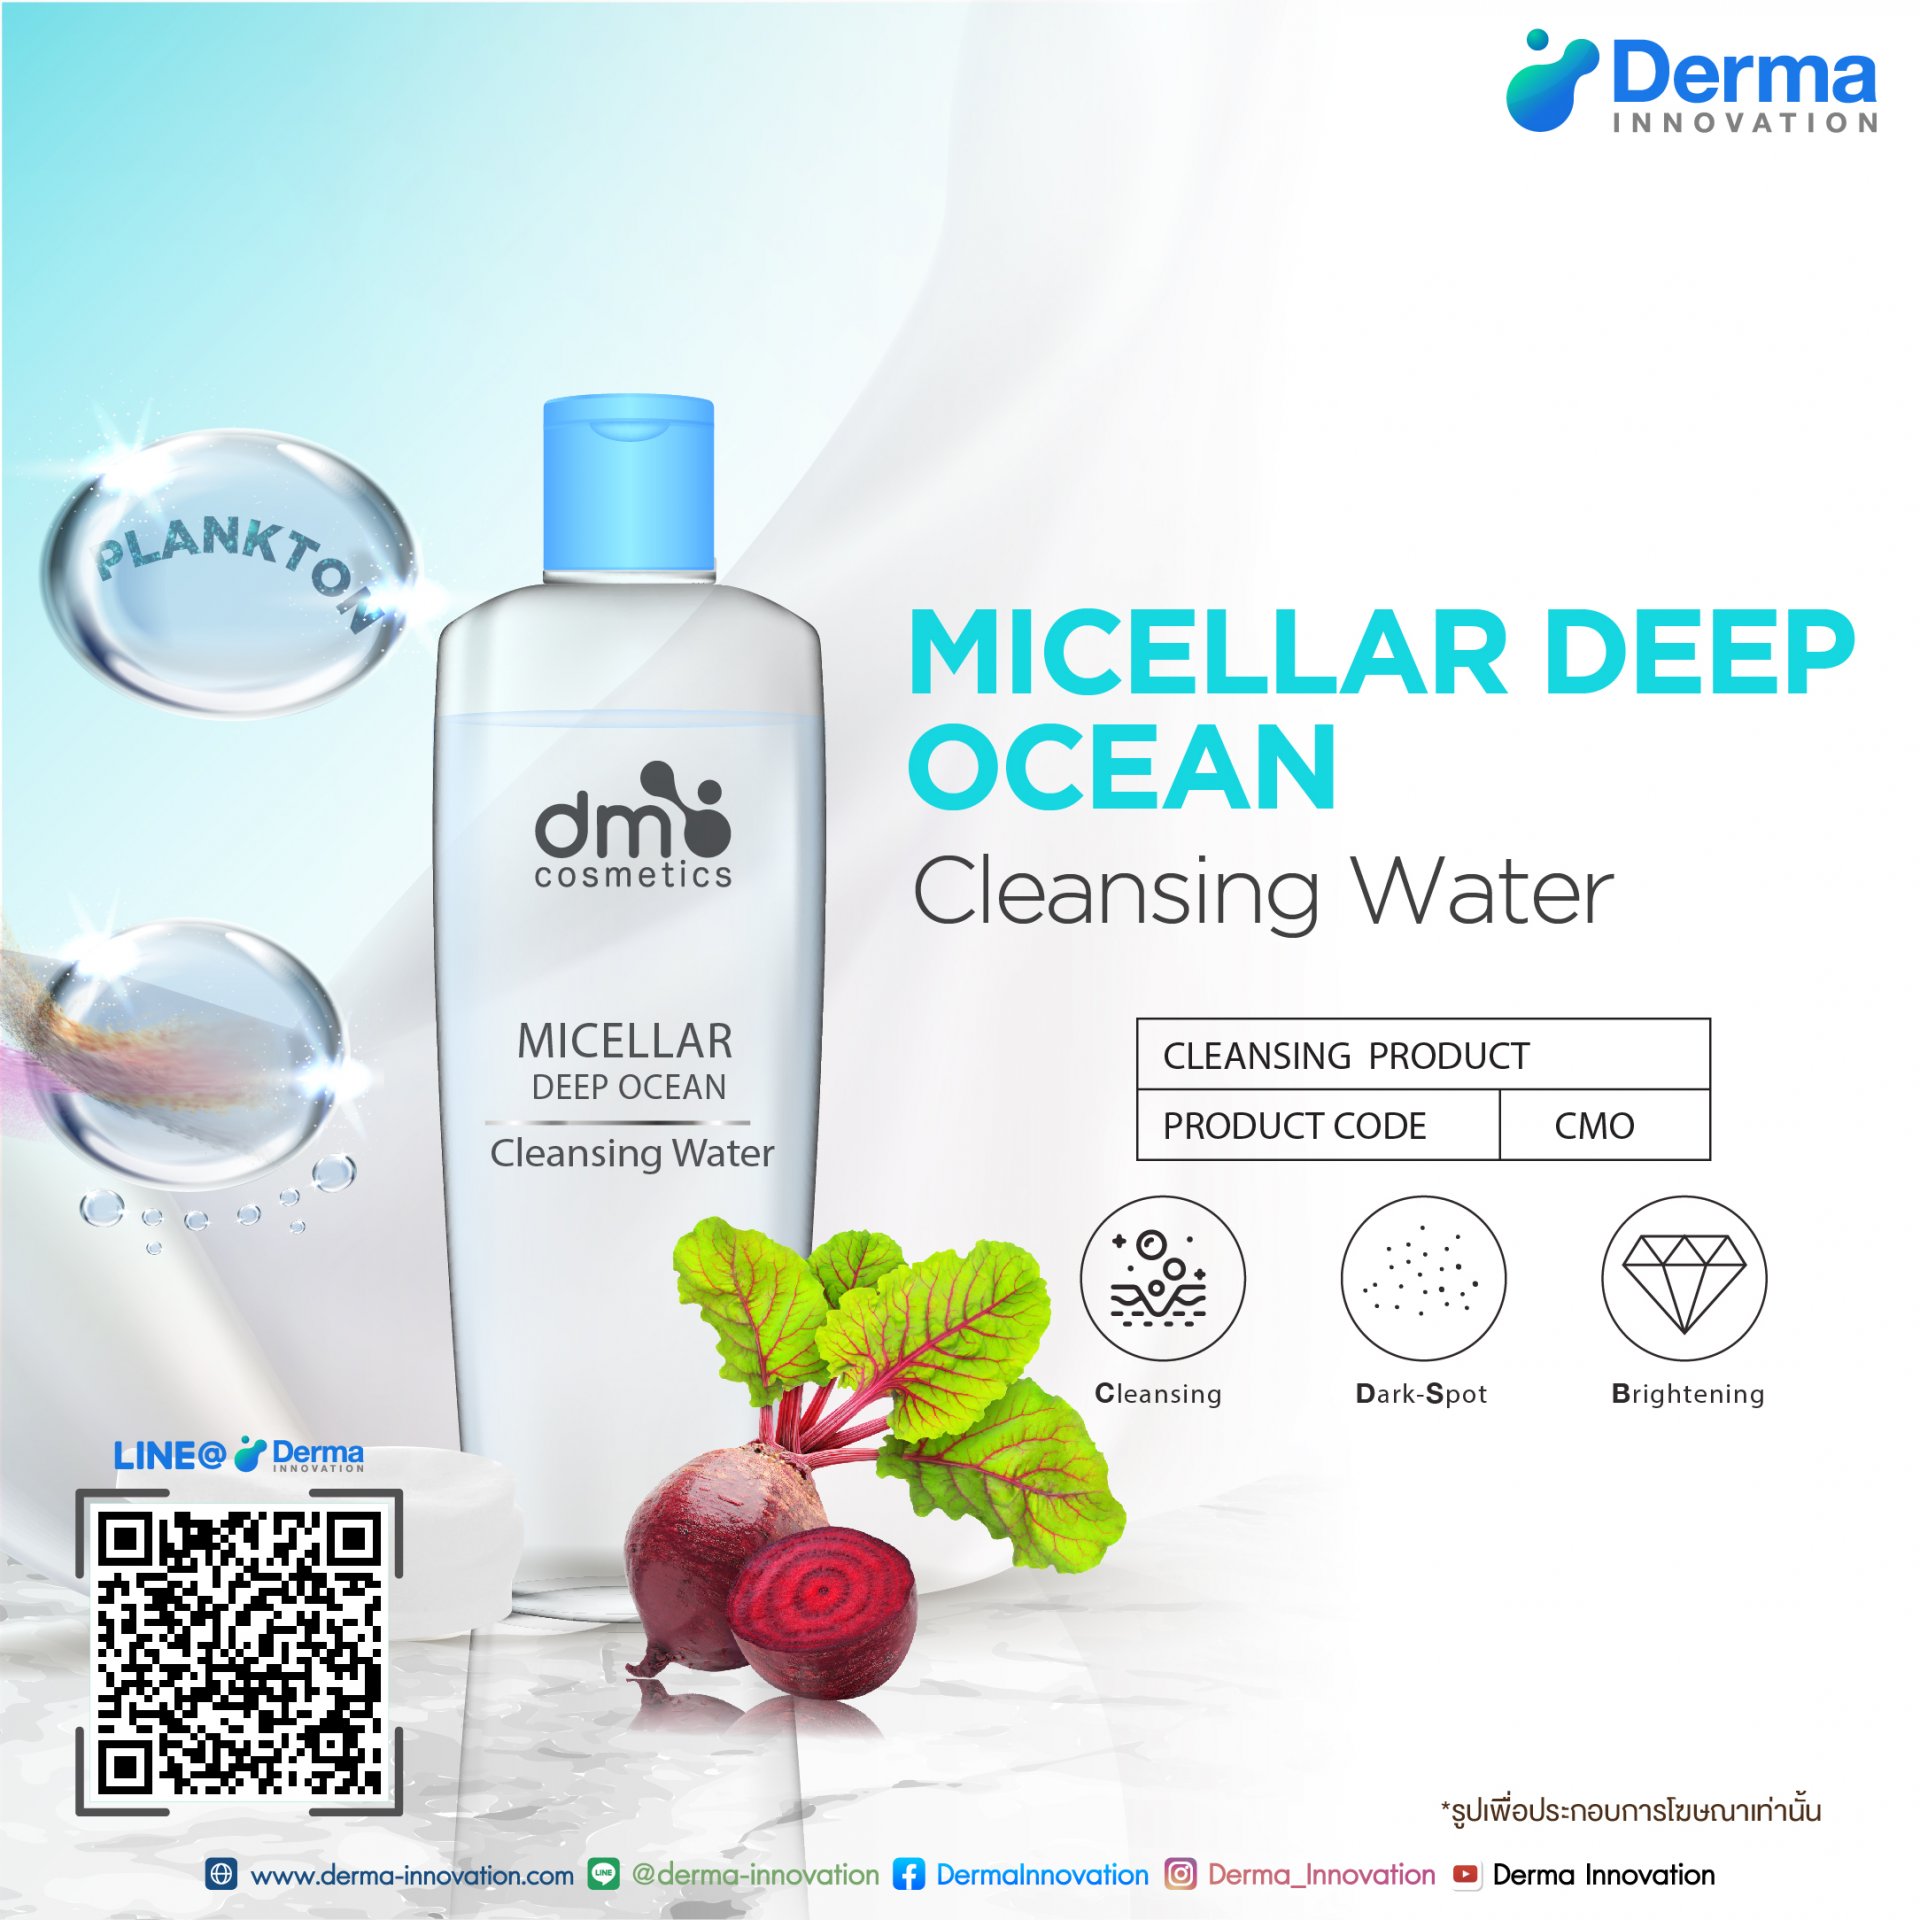 Micellar Deep Ocean Cleansing Water